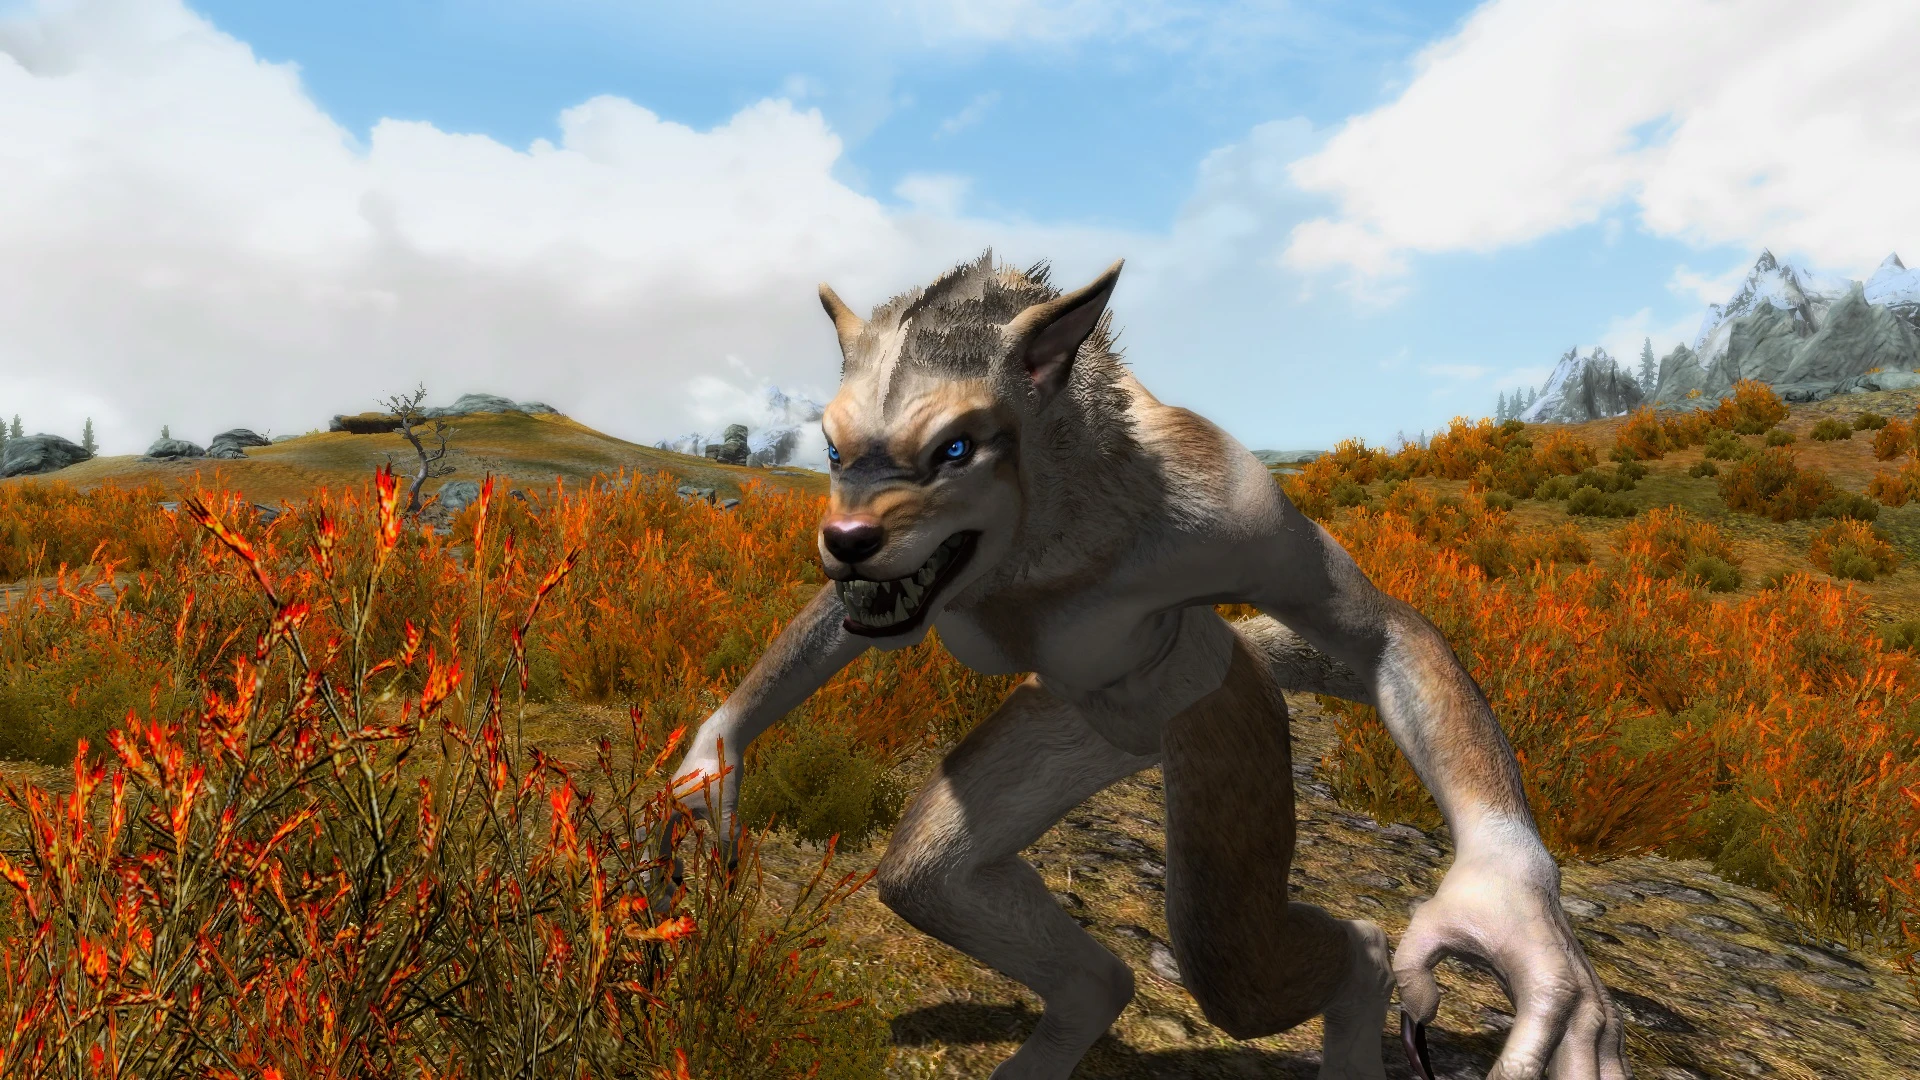 skyrim werewolf armor mod